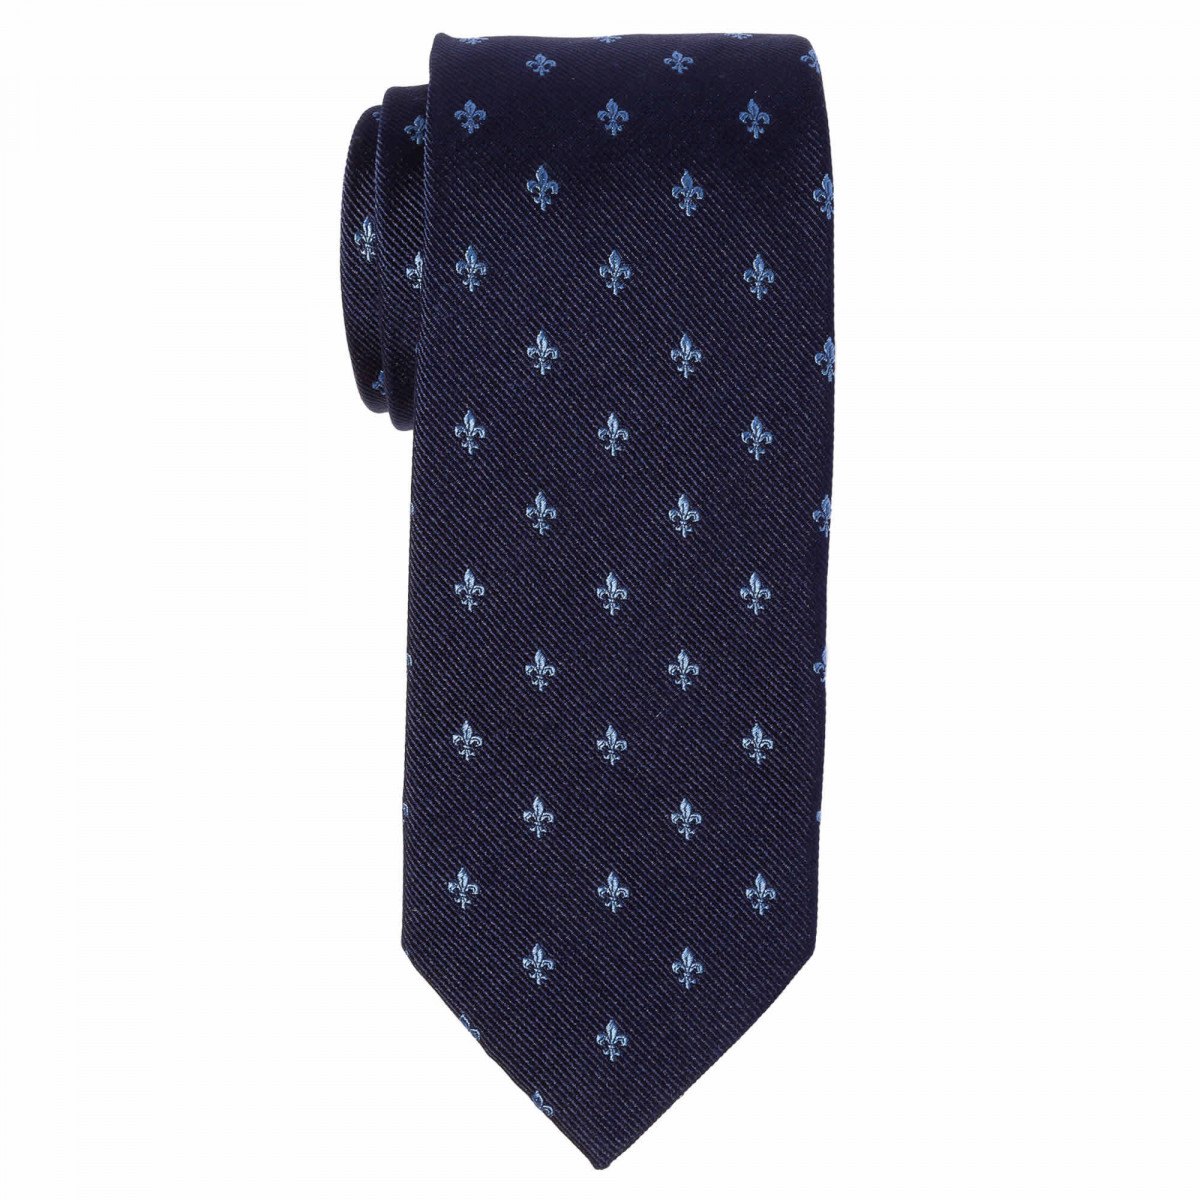 Cravate slim fleur de lys - Soie Bleu marine